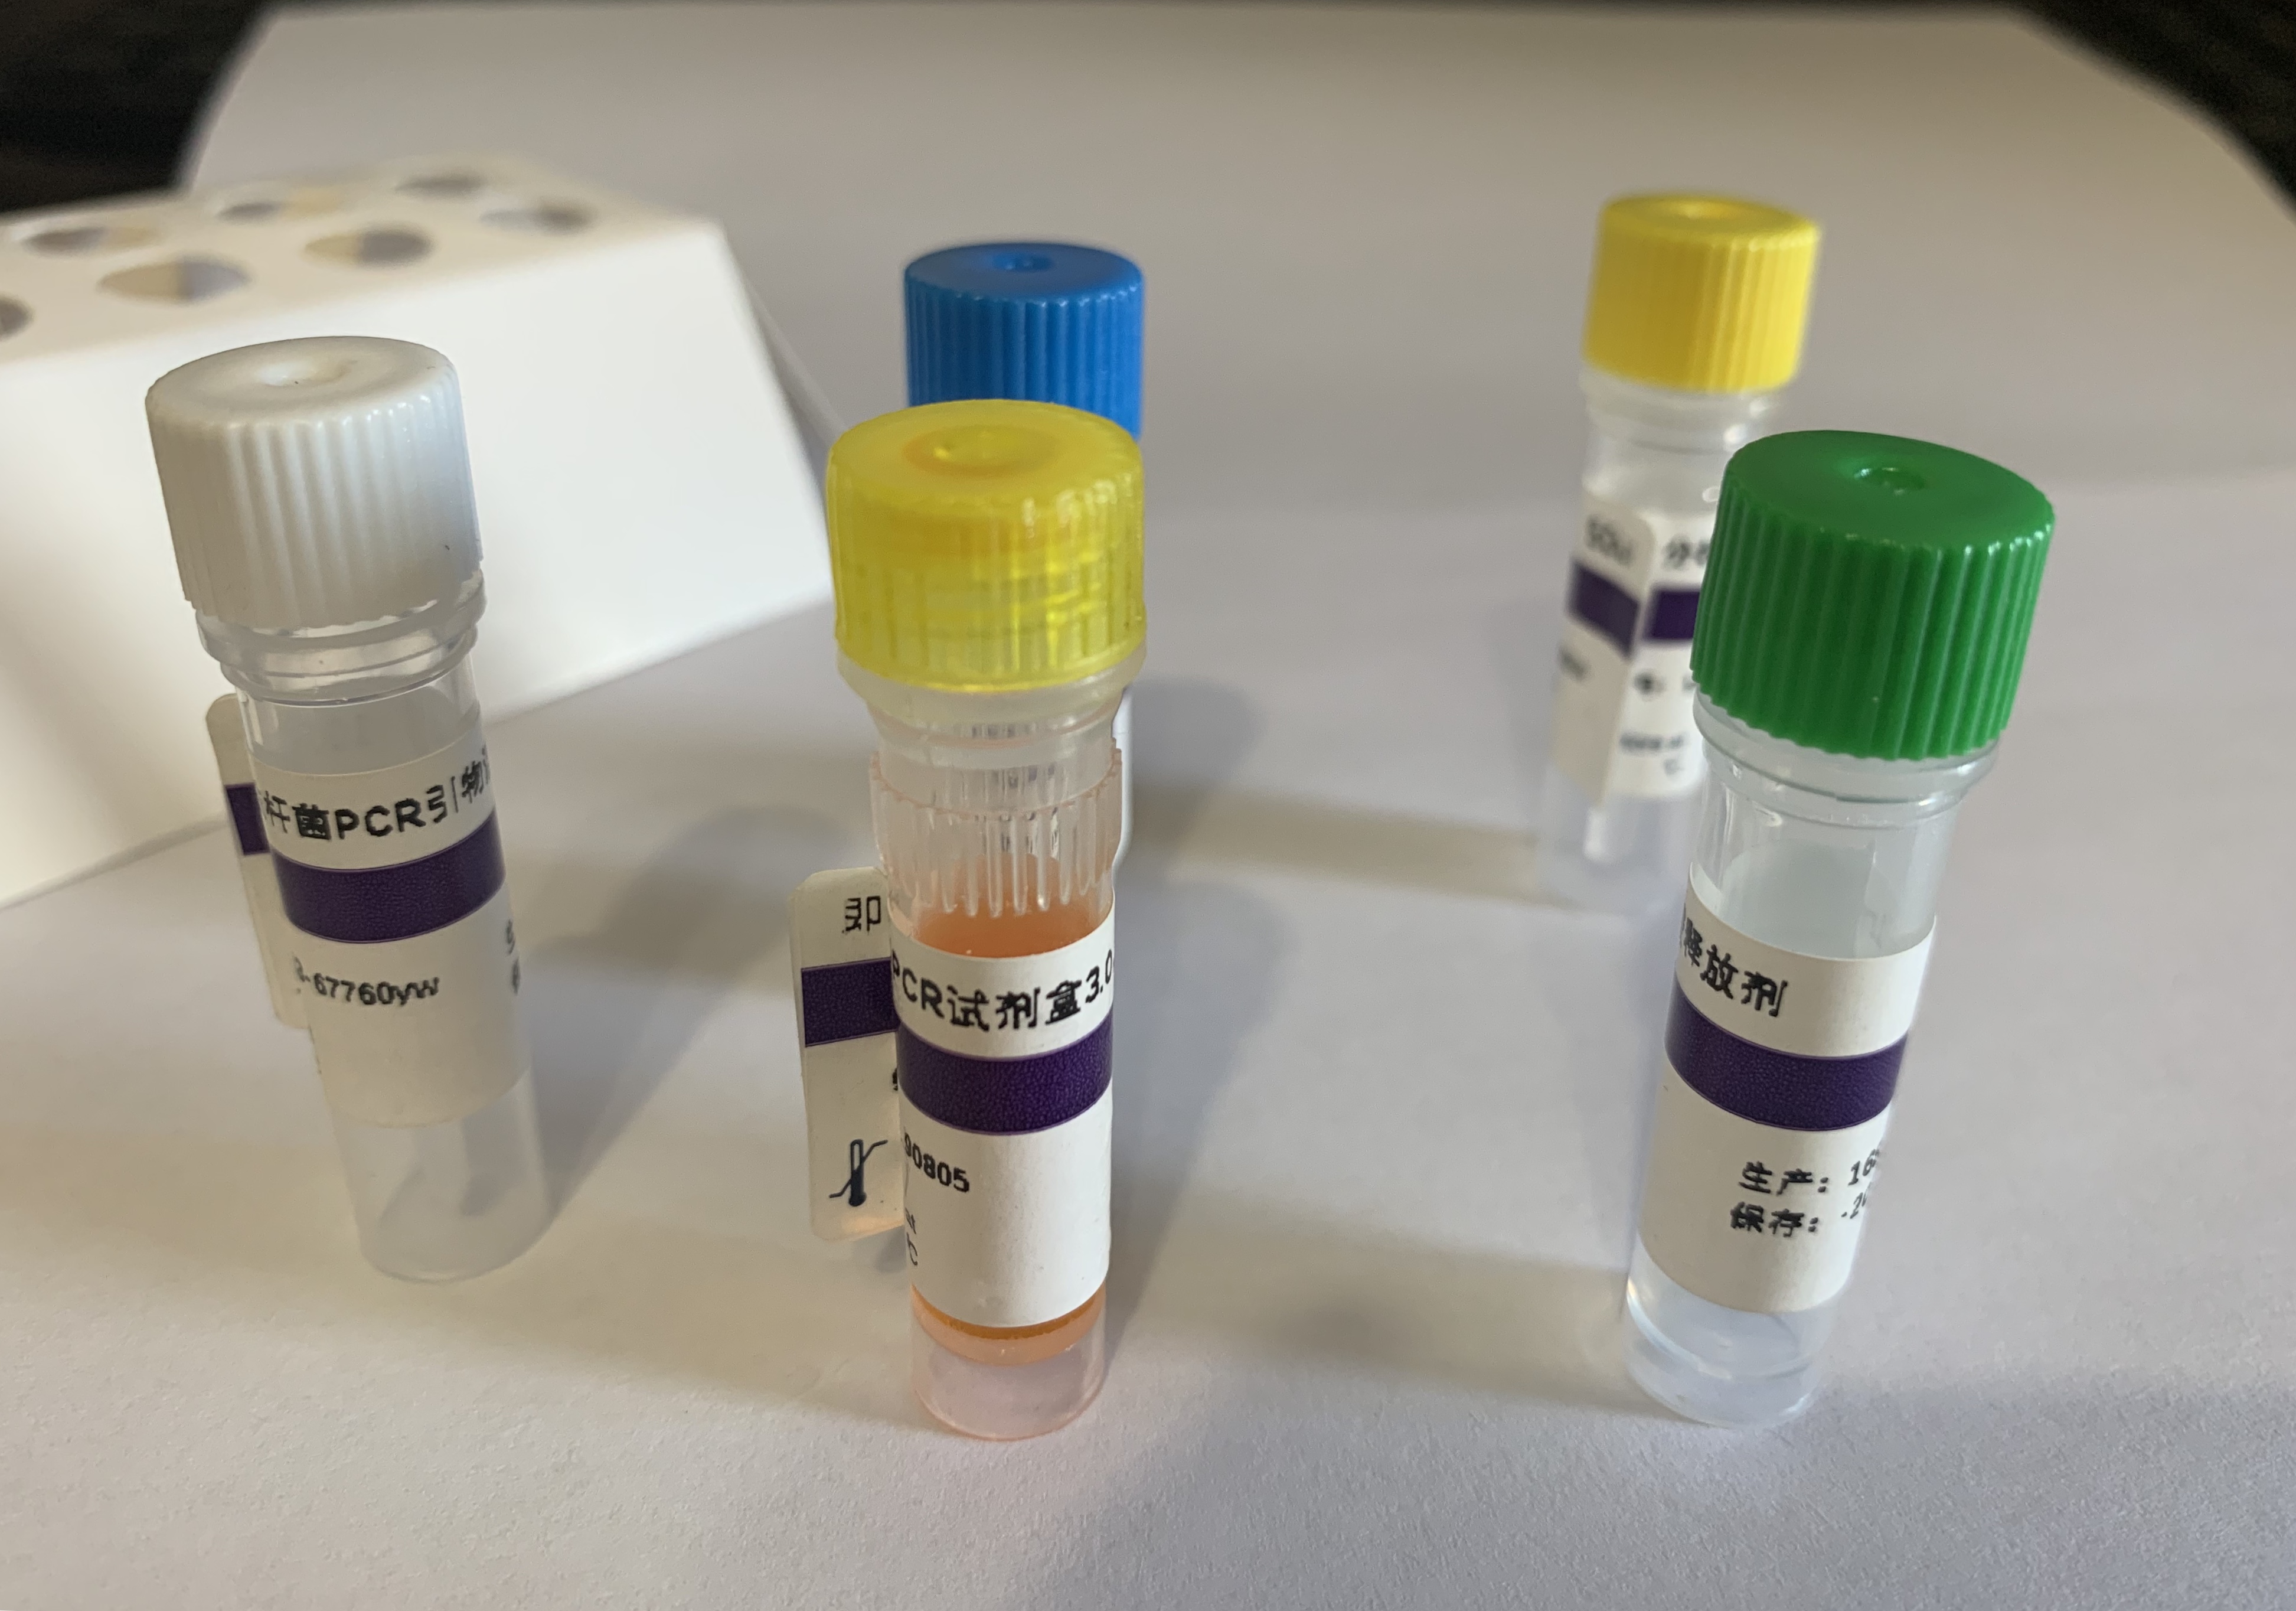 牛呼吸道合胞体病毒RT-PCR试剂盒